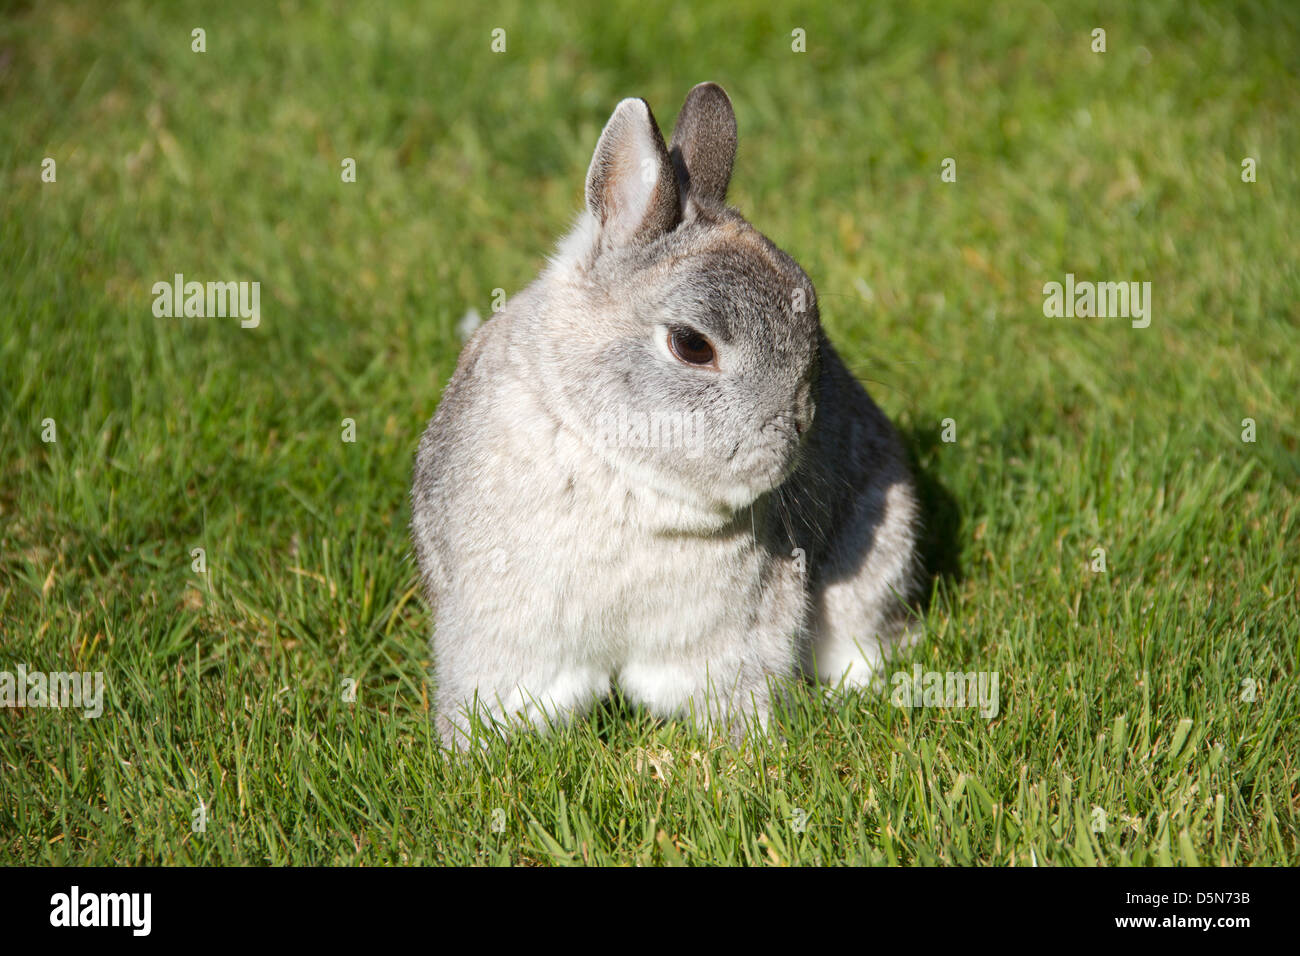 Un lapin nain gris assis sur l'herbe. Banque D'Images